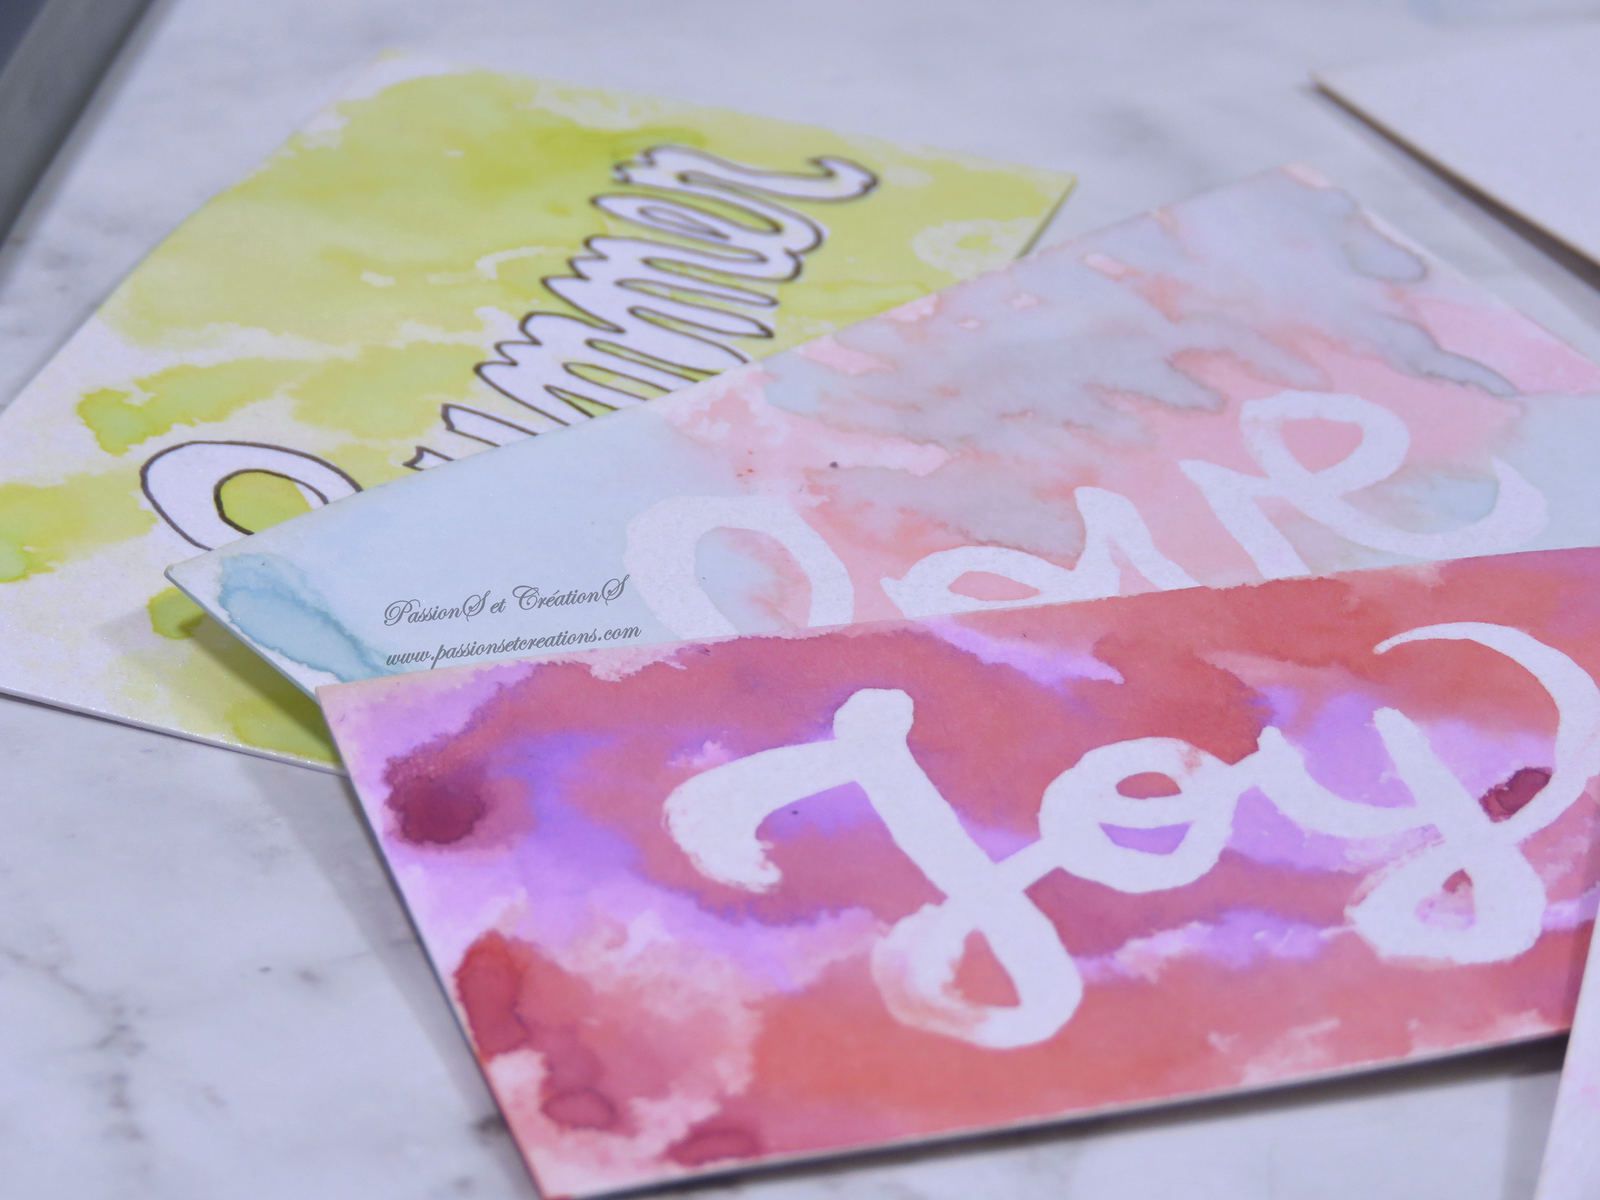 Encres aquarelle et drawing gum ! - Two pour le DIY ! Blog DIY